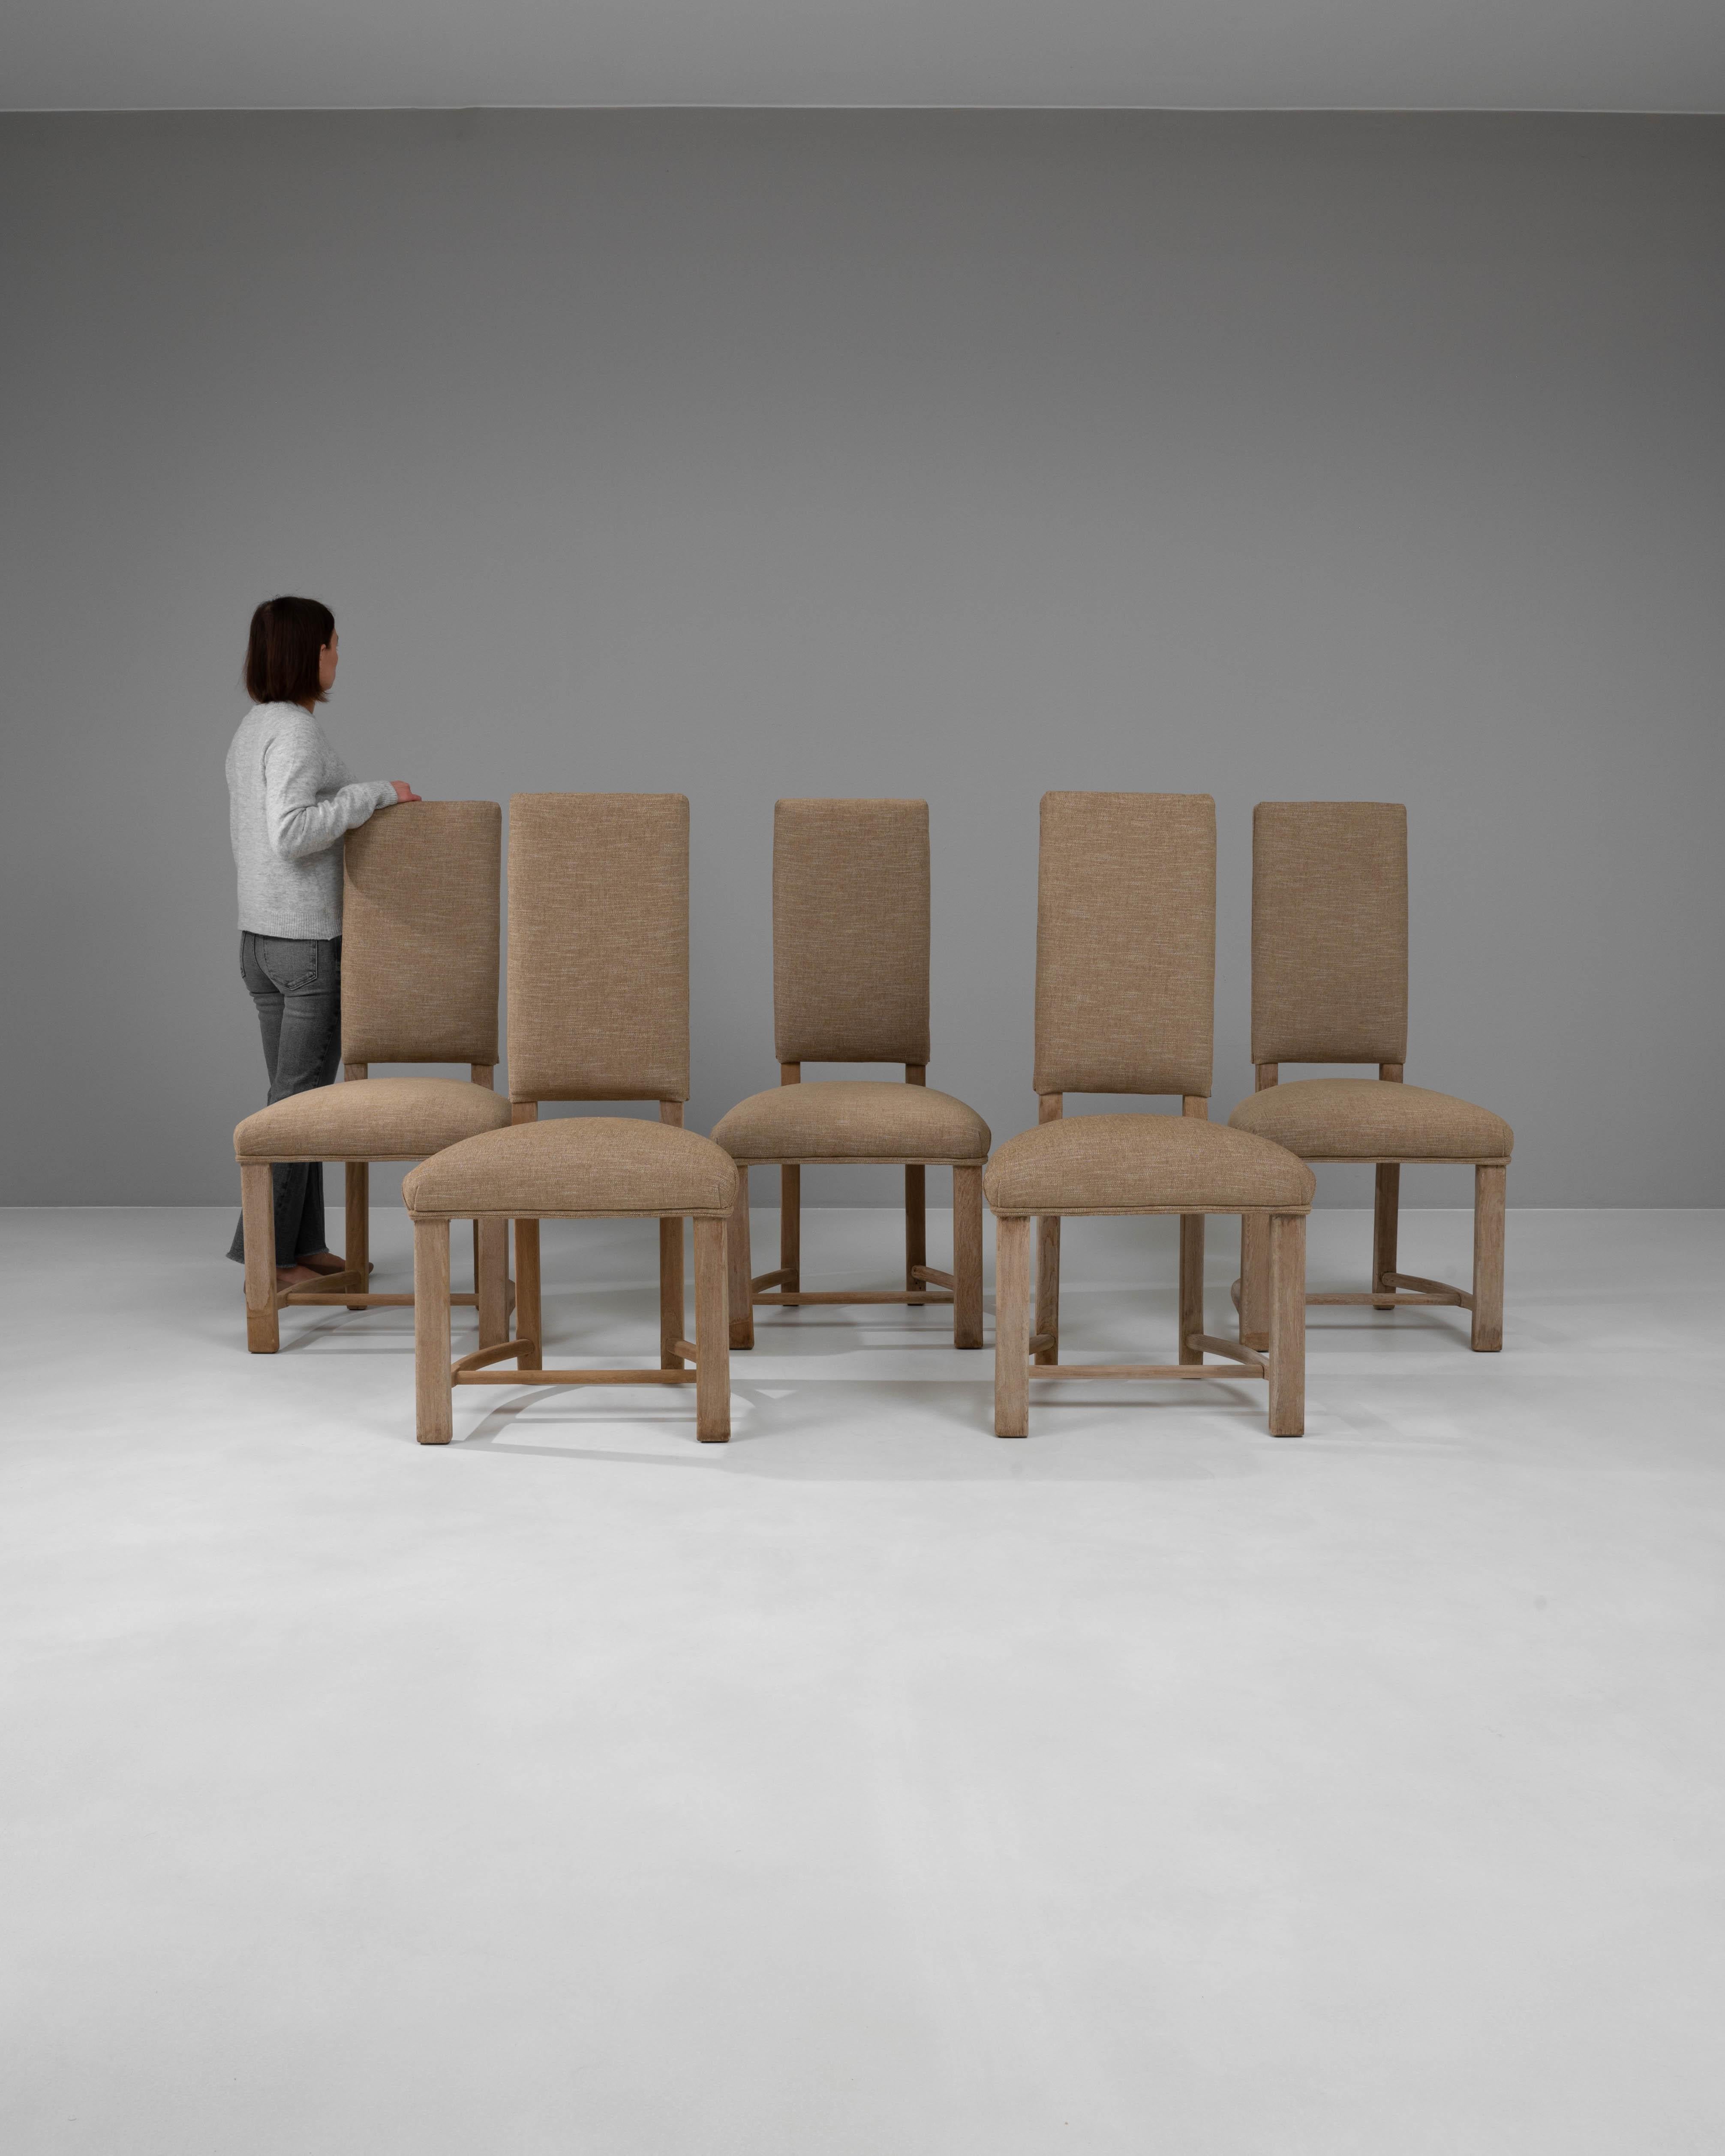 Wir präsentieren ein schickes und stromlinienförmiges Set von fünf Esszimmerstühlen aus gebleichter französischer Eiche des 20. Jahrhunderts, von denen jeder ein elegantes und minimalistisches Design aufweist, das jeden modernen Essbereich ergänzt.